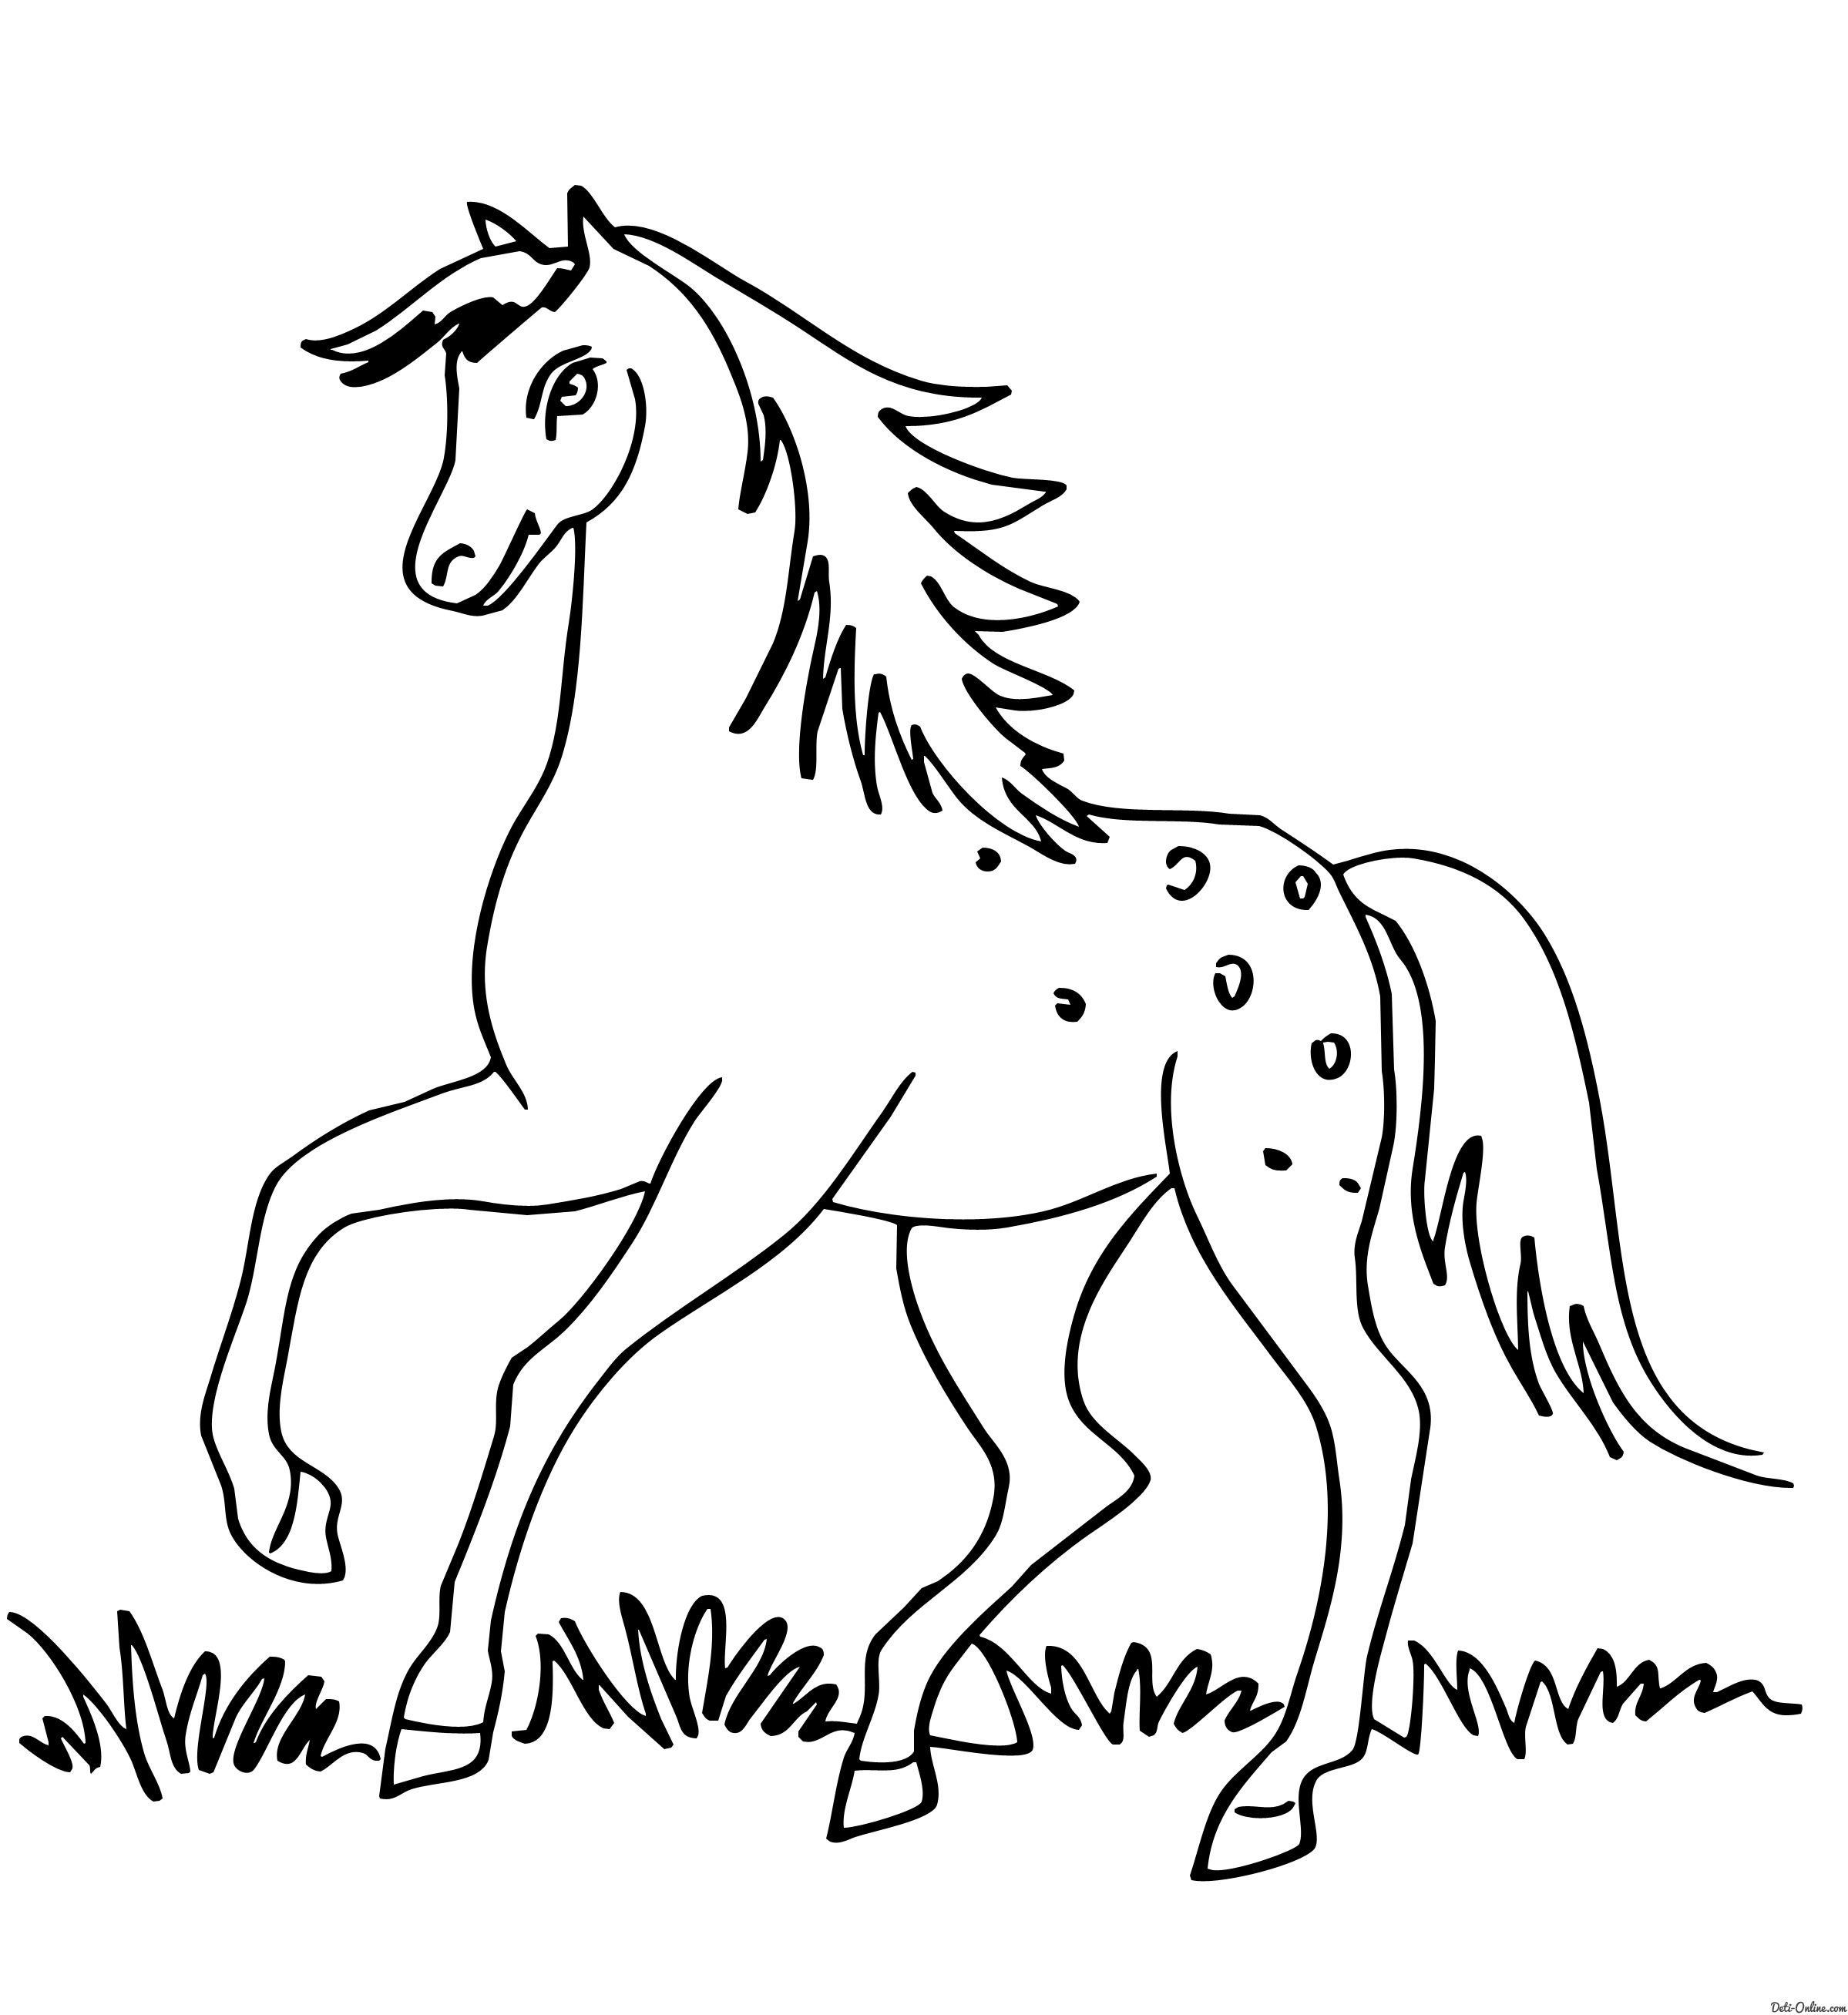 Раскрасить лошадку. Раскраска. Лошадка. Лошадка раскраска для детей. Лошадь раскраска для детей. Раскраска детская лошадка.